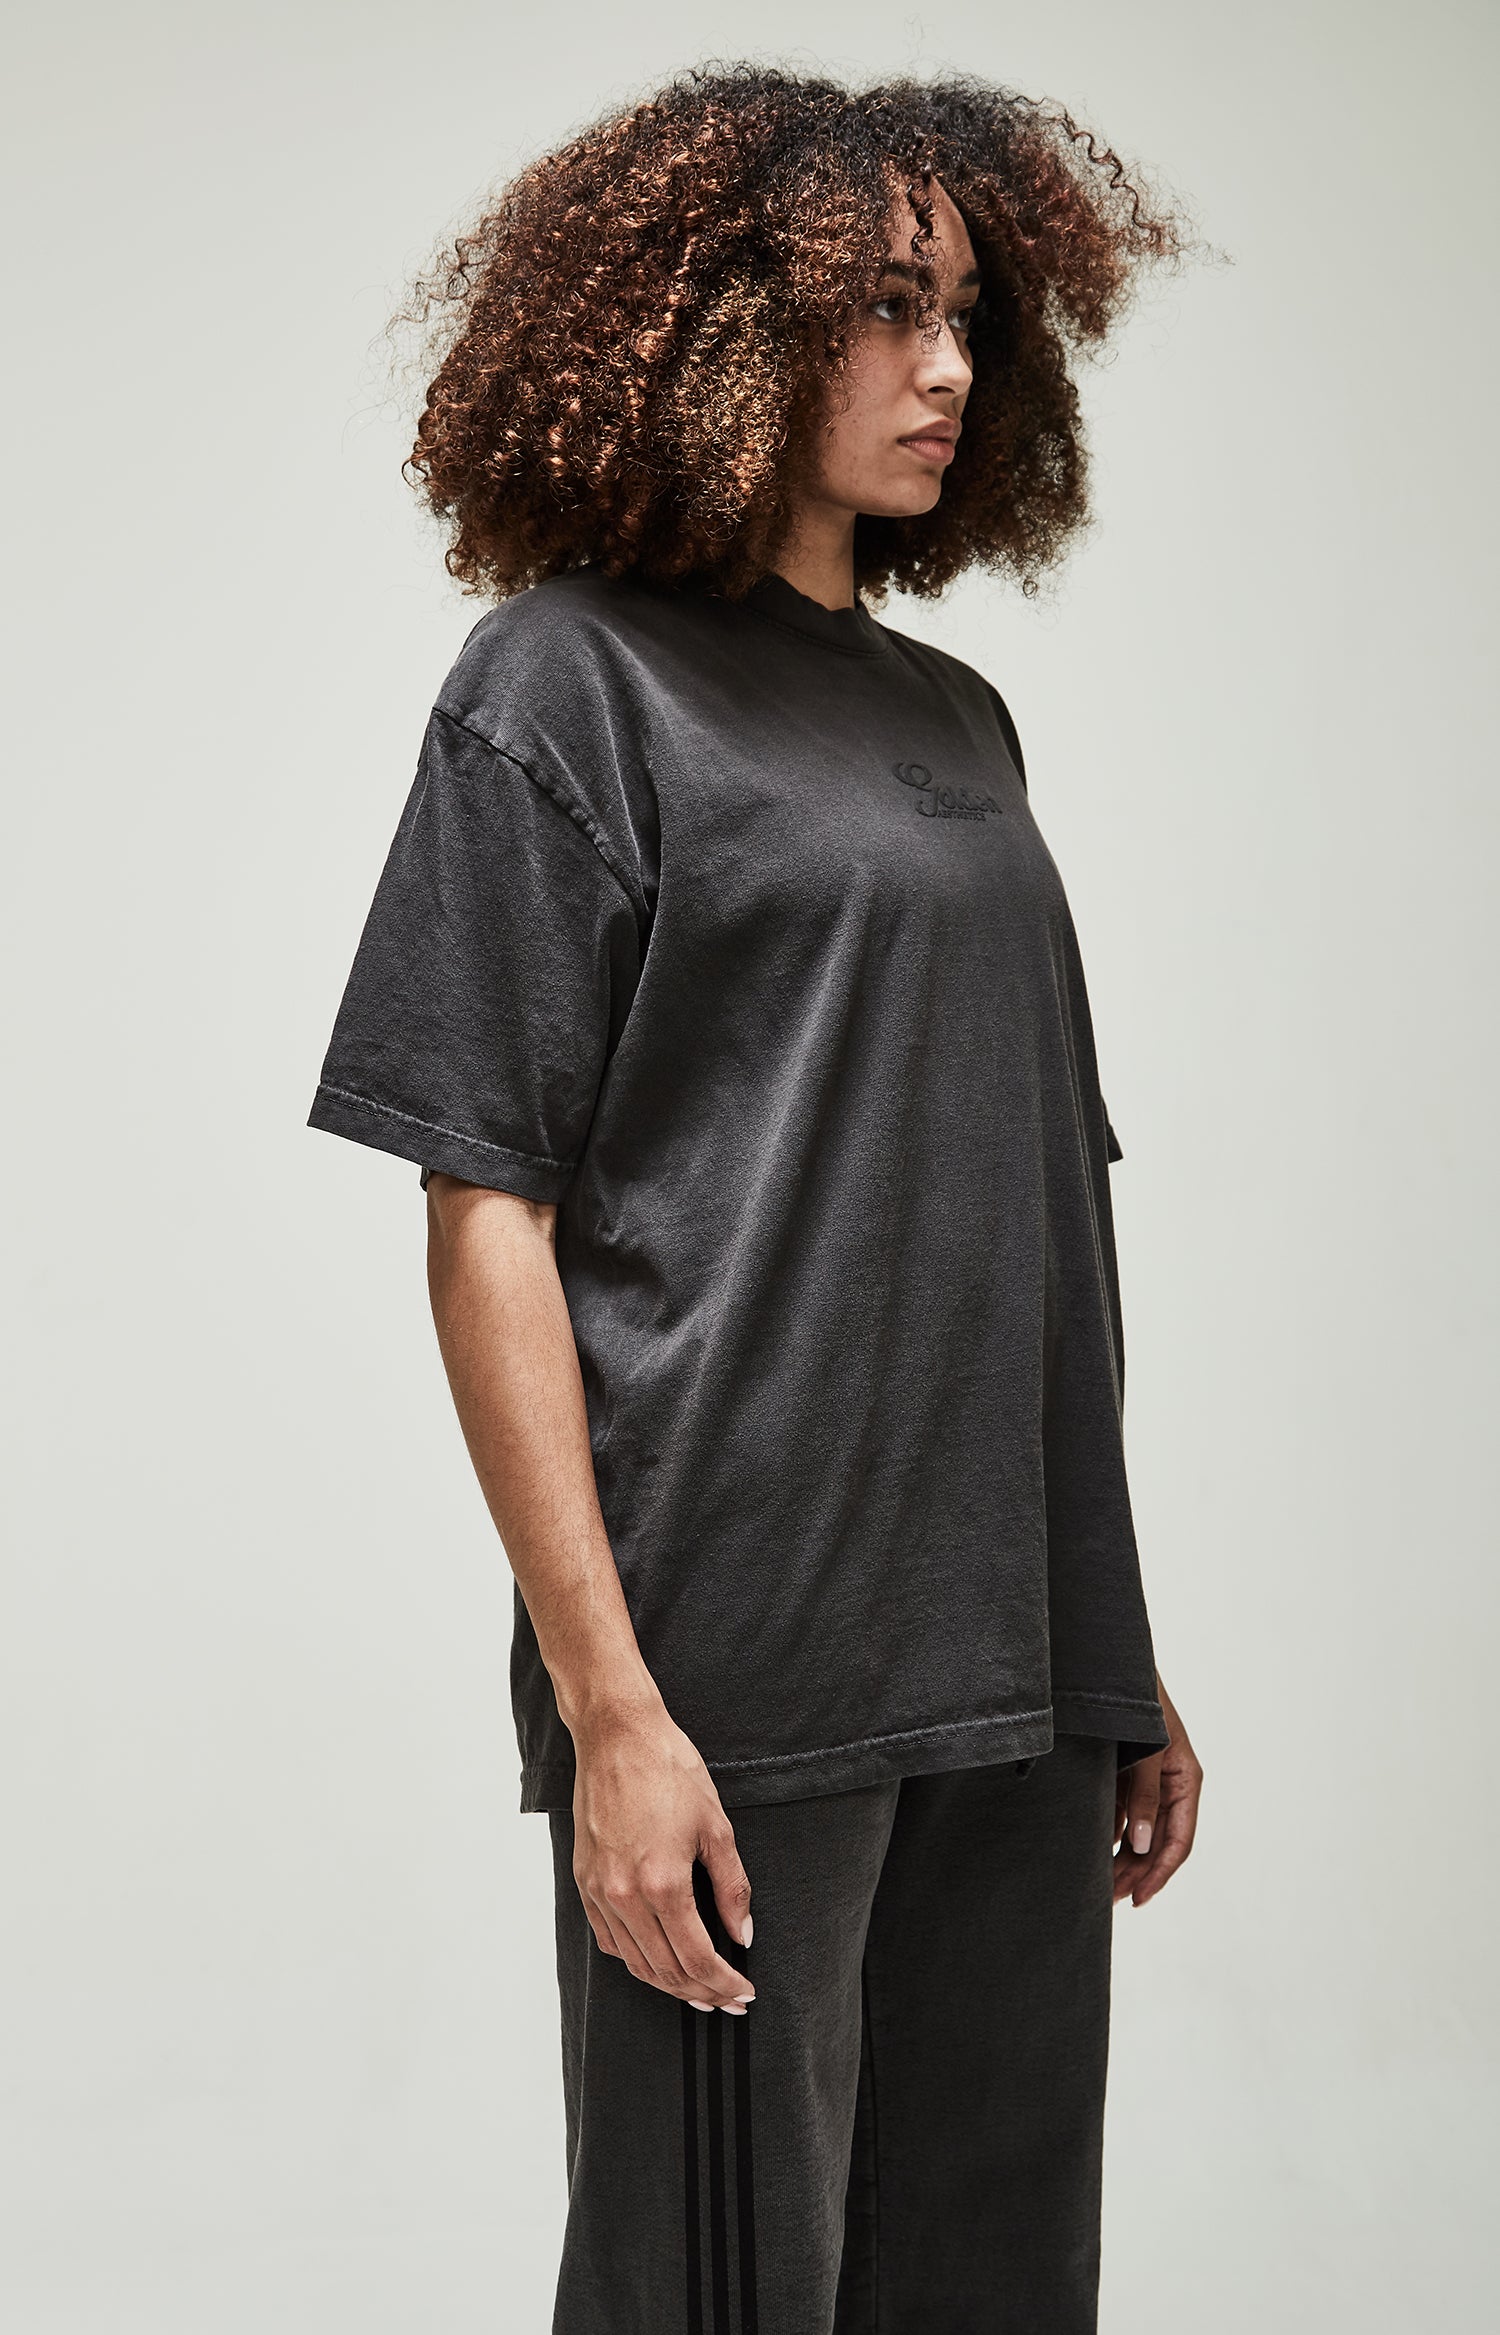 Women's Vintage Black Dye Crew Neck T-Shirt